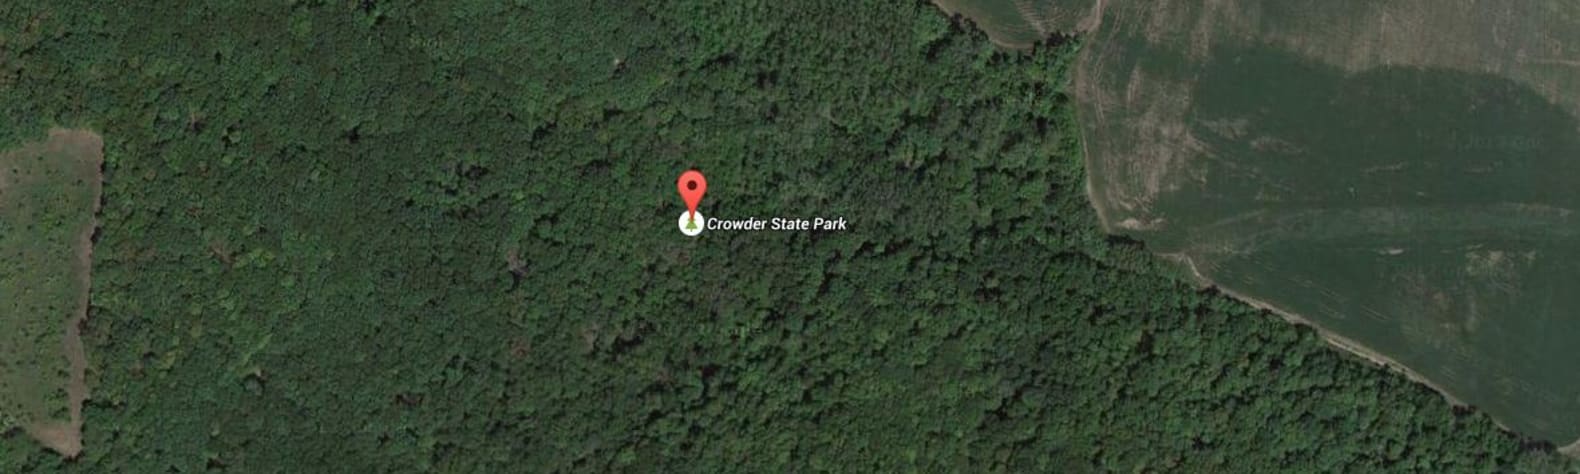 Crowder State Park